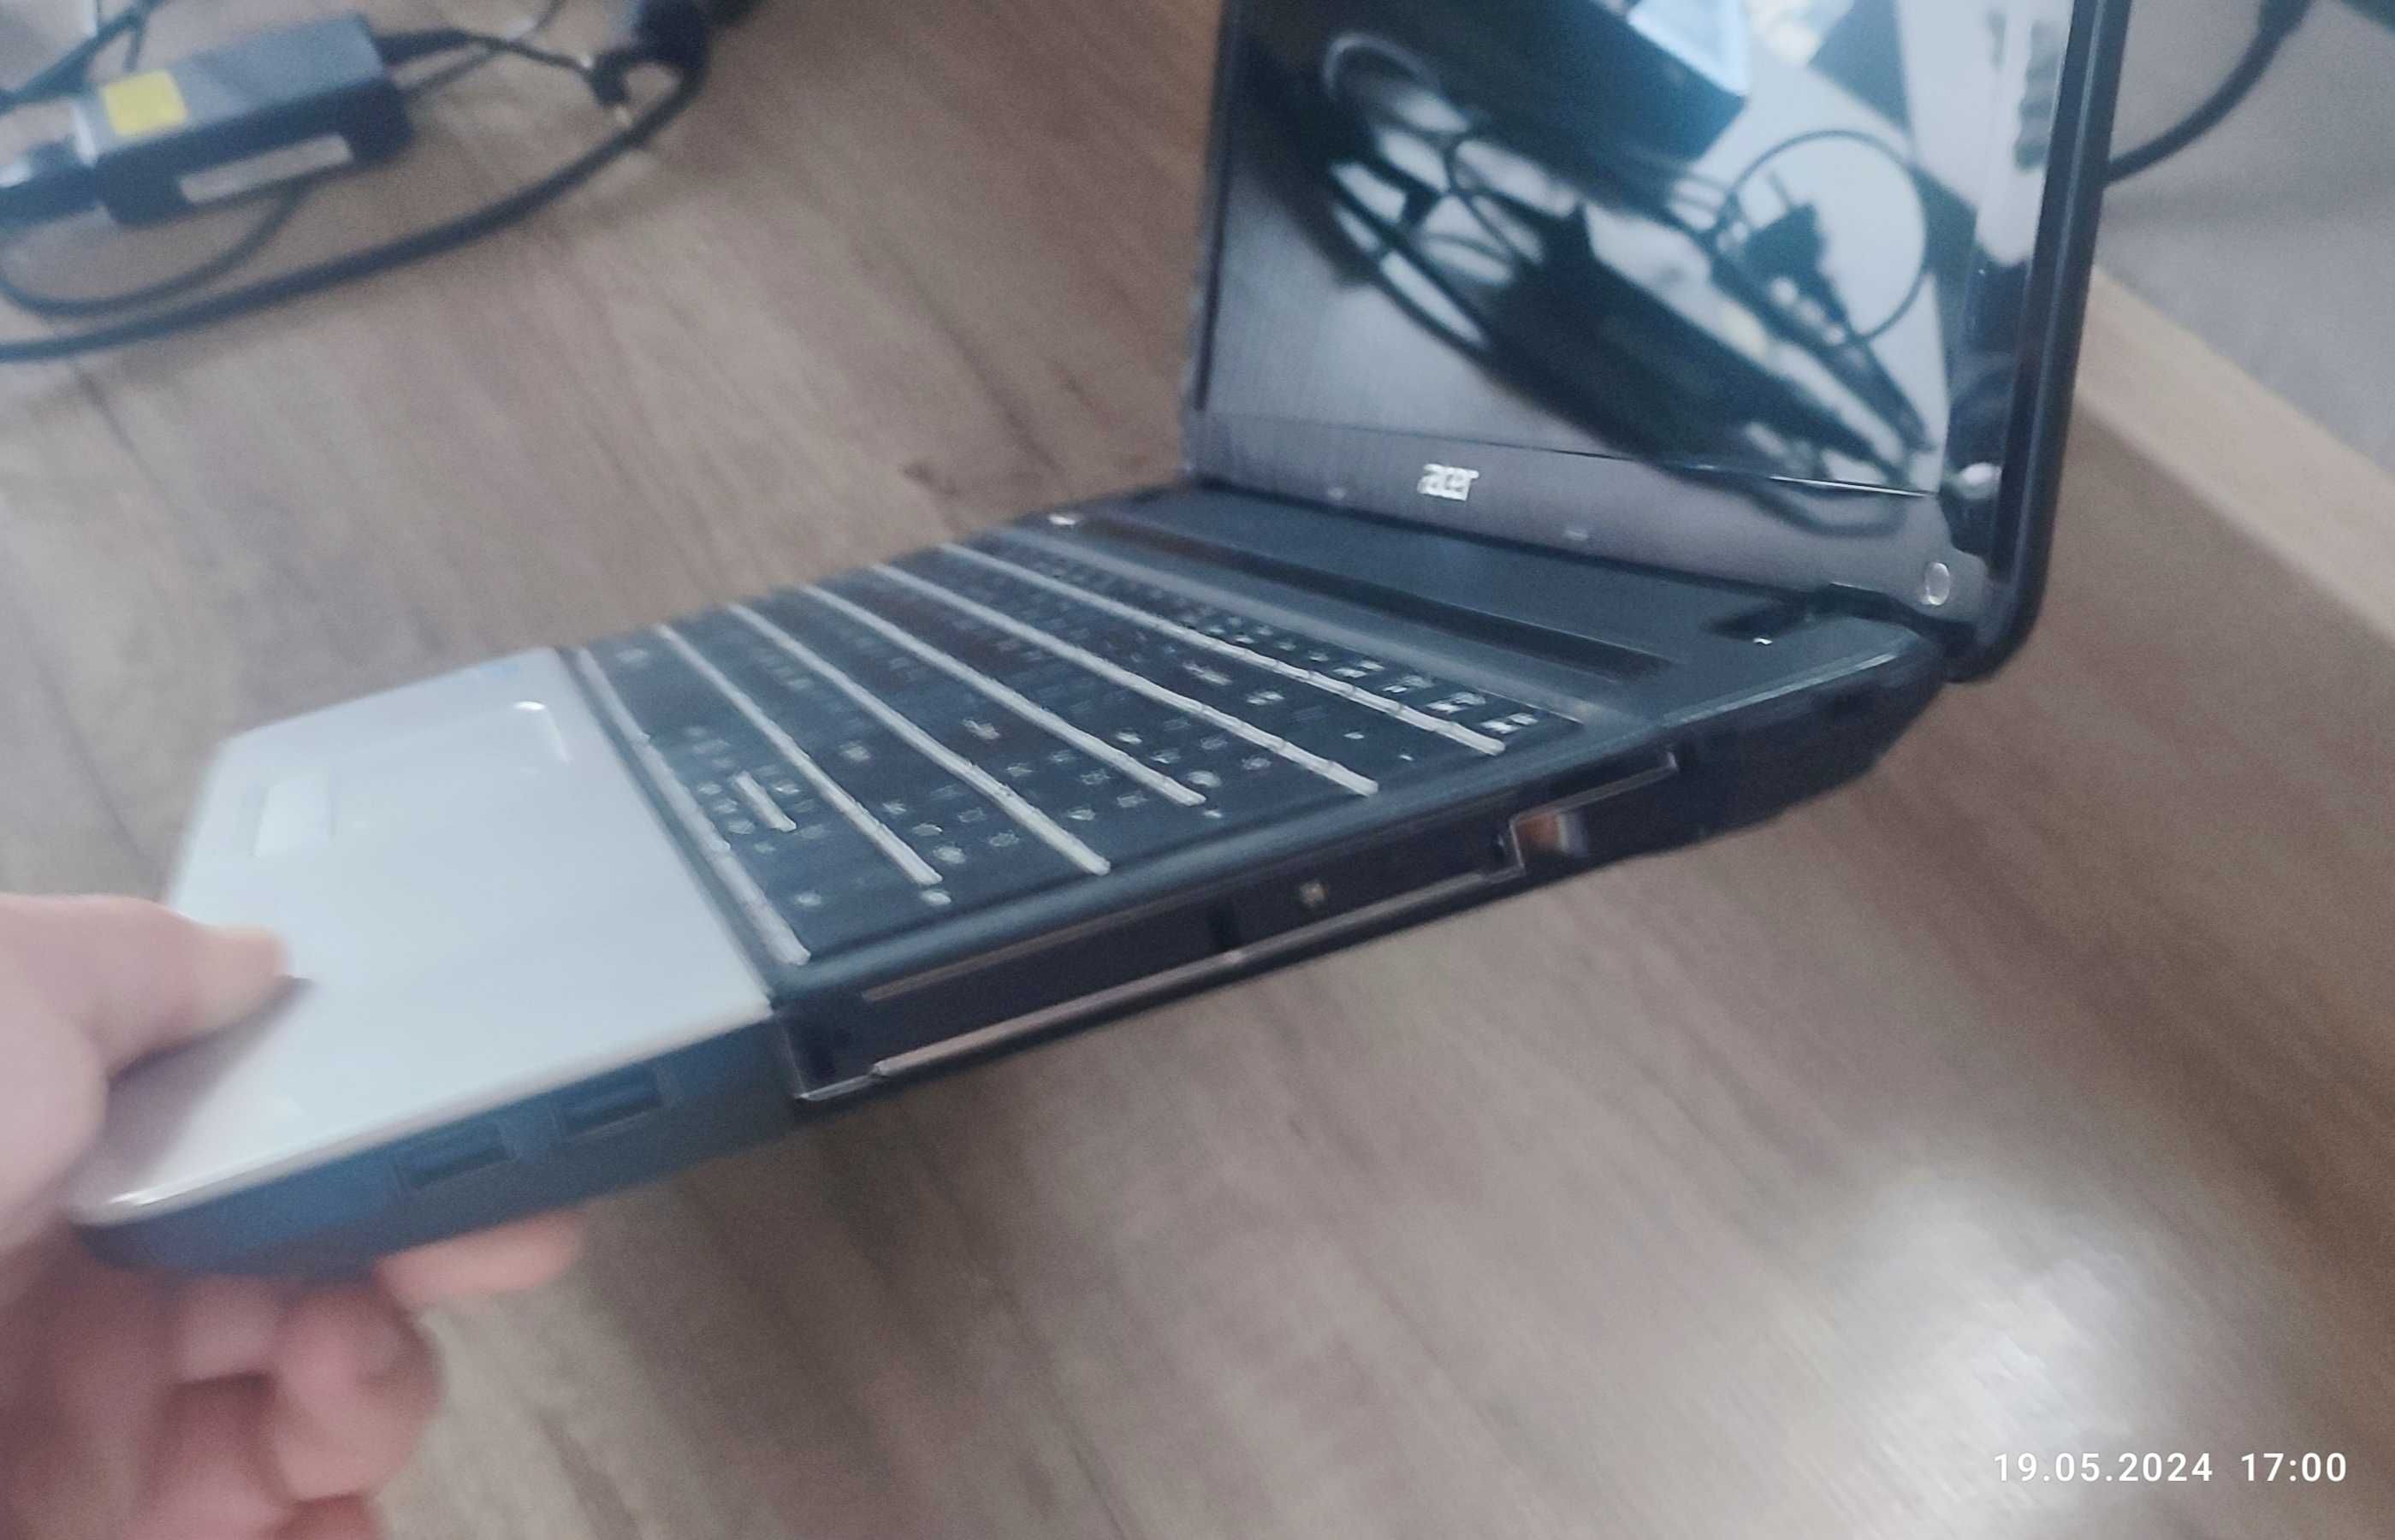 Laptop Acer + torba